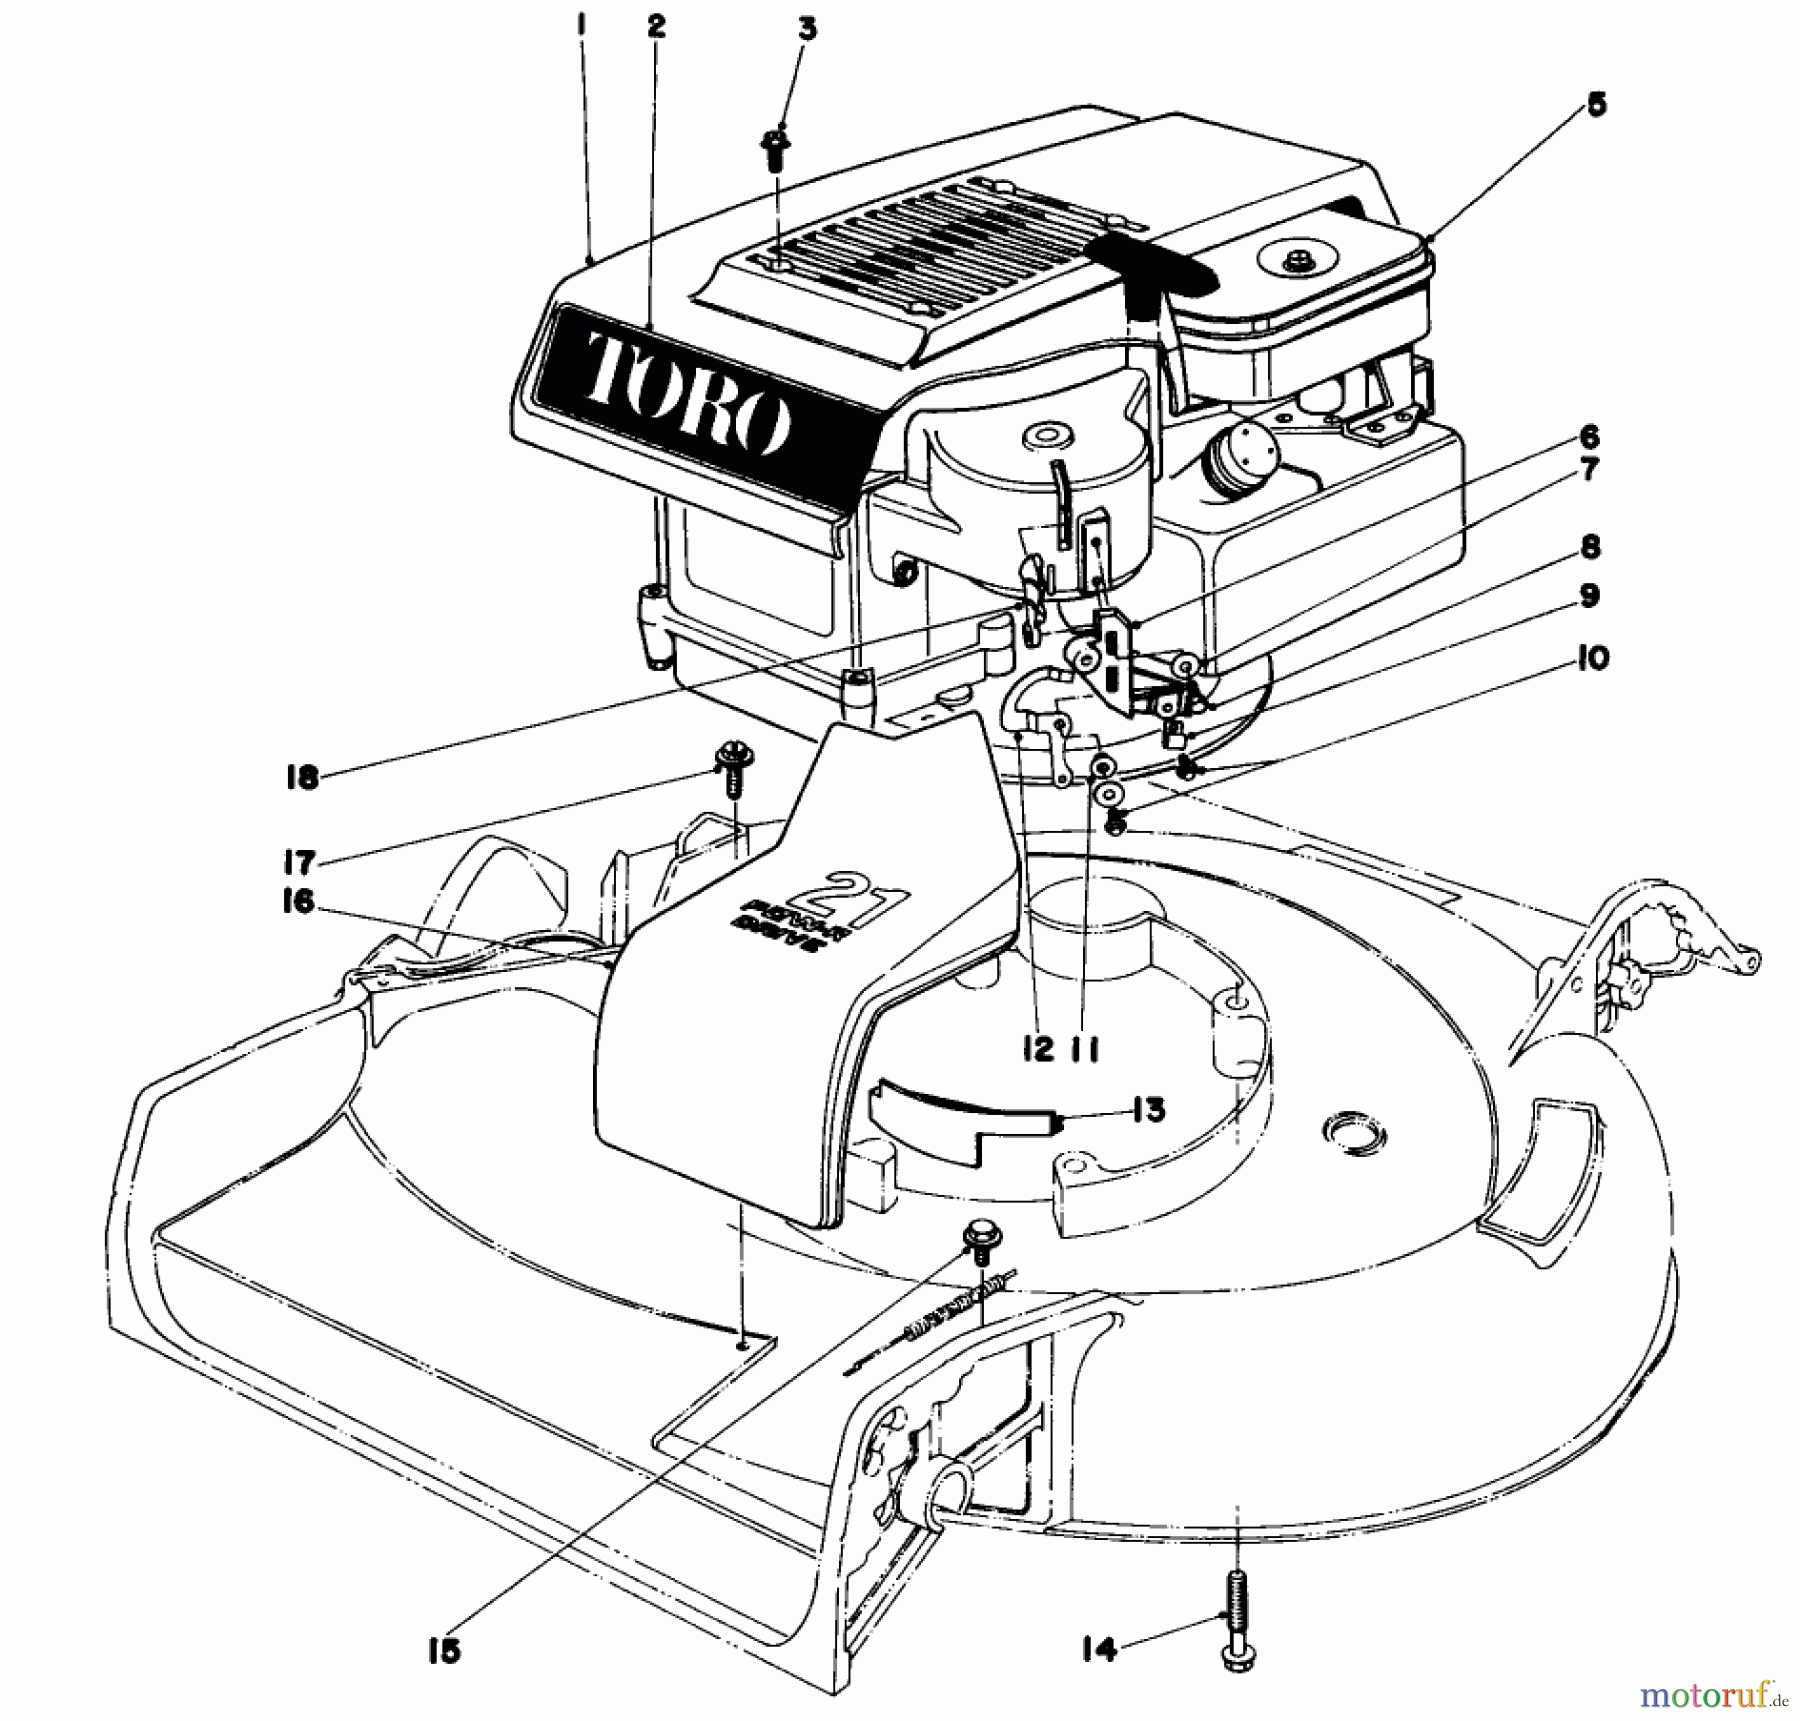  Toro Neu Mowers, Walk-Behind Seite 1 16113 - Toro Whirlwind II Lawnmower, 1979 (9000001-9999999) ENGINE ASSEMBLY MODEL 16277